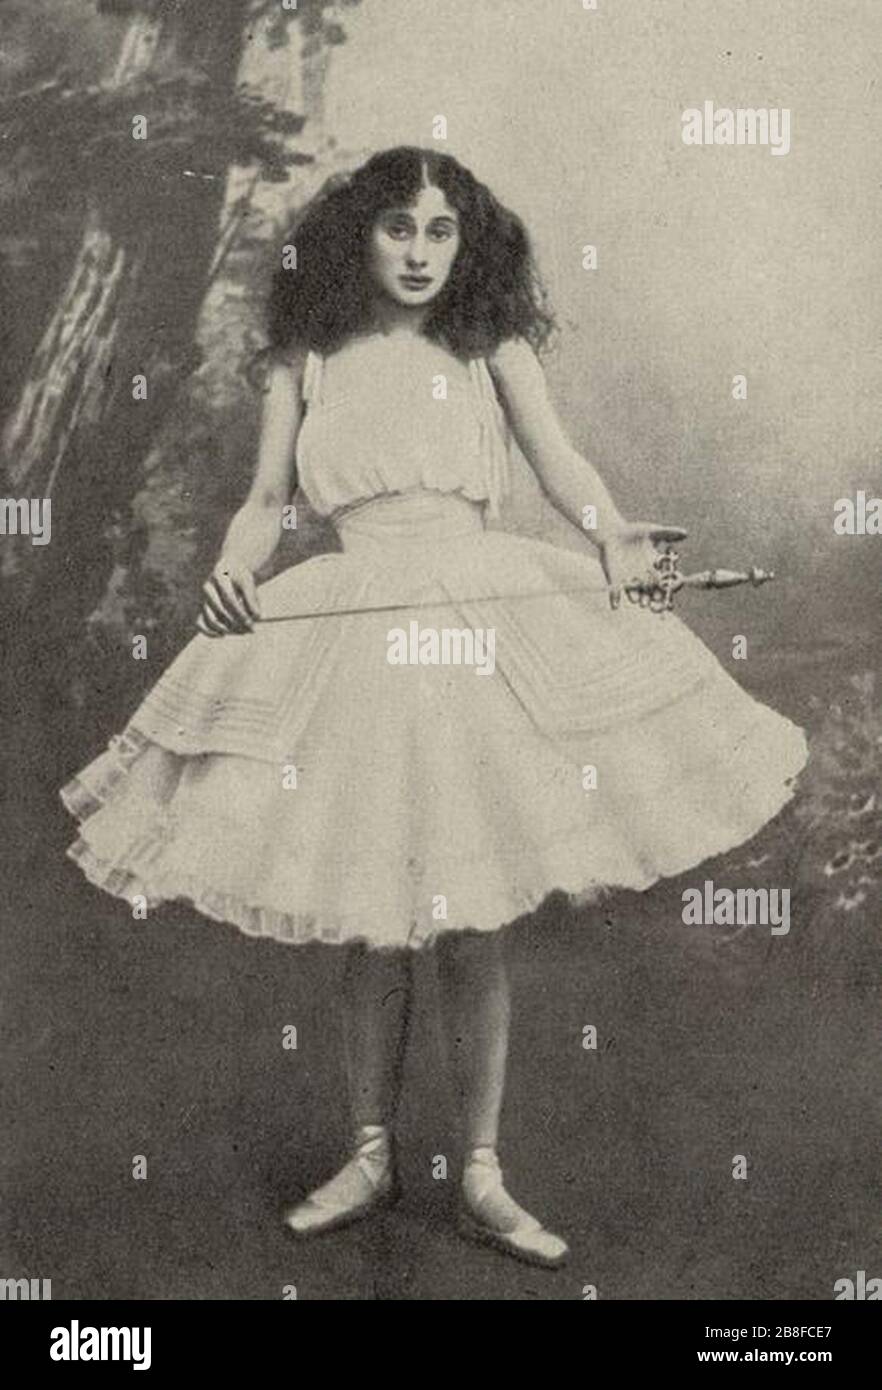 Giselle - Anna Pavlova,1903. Stock Photo